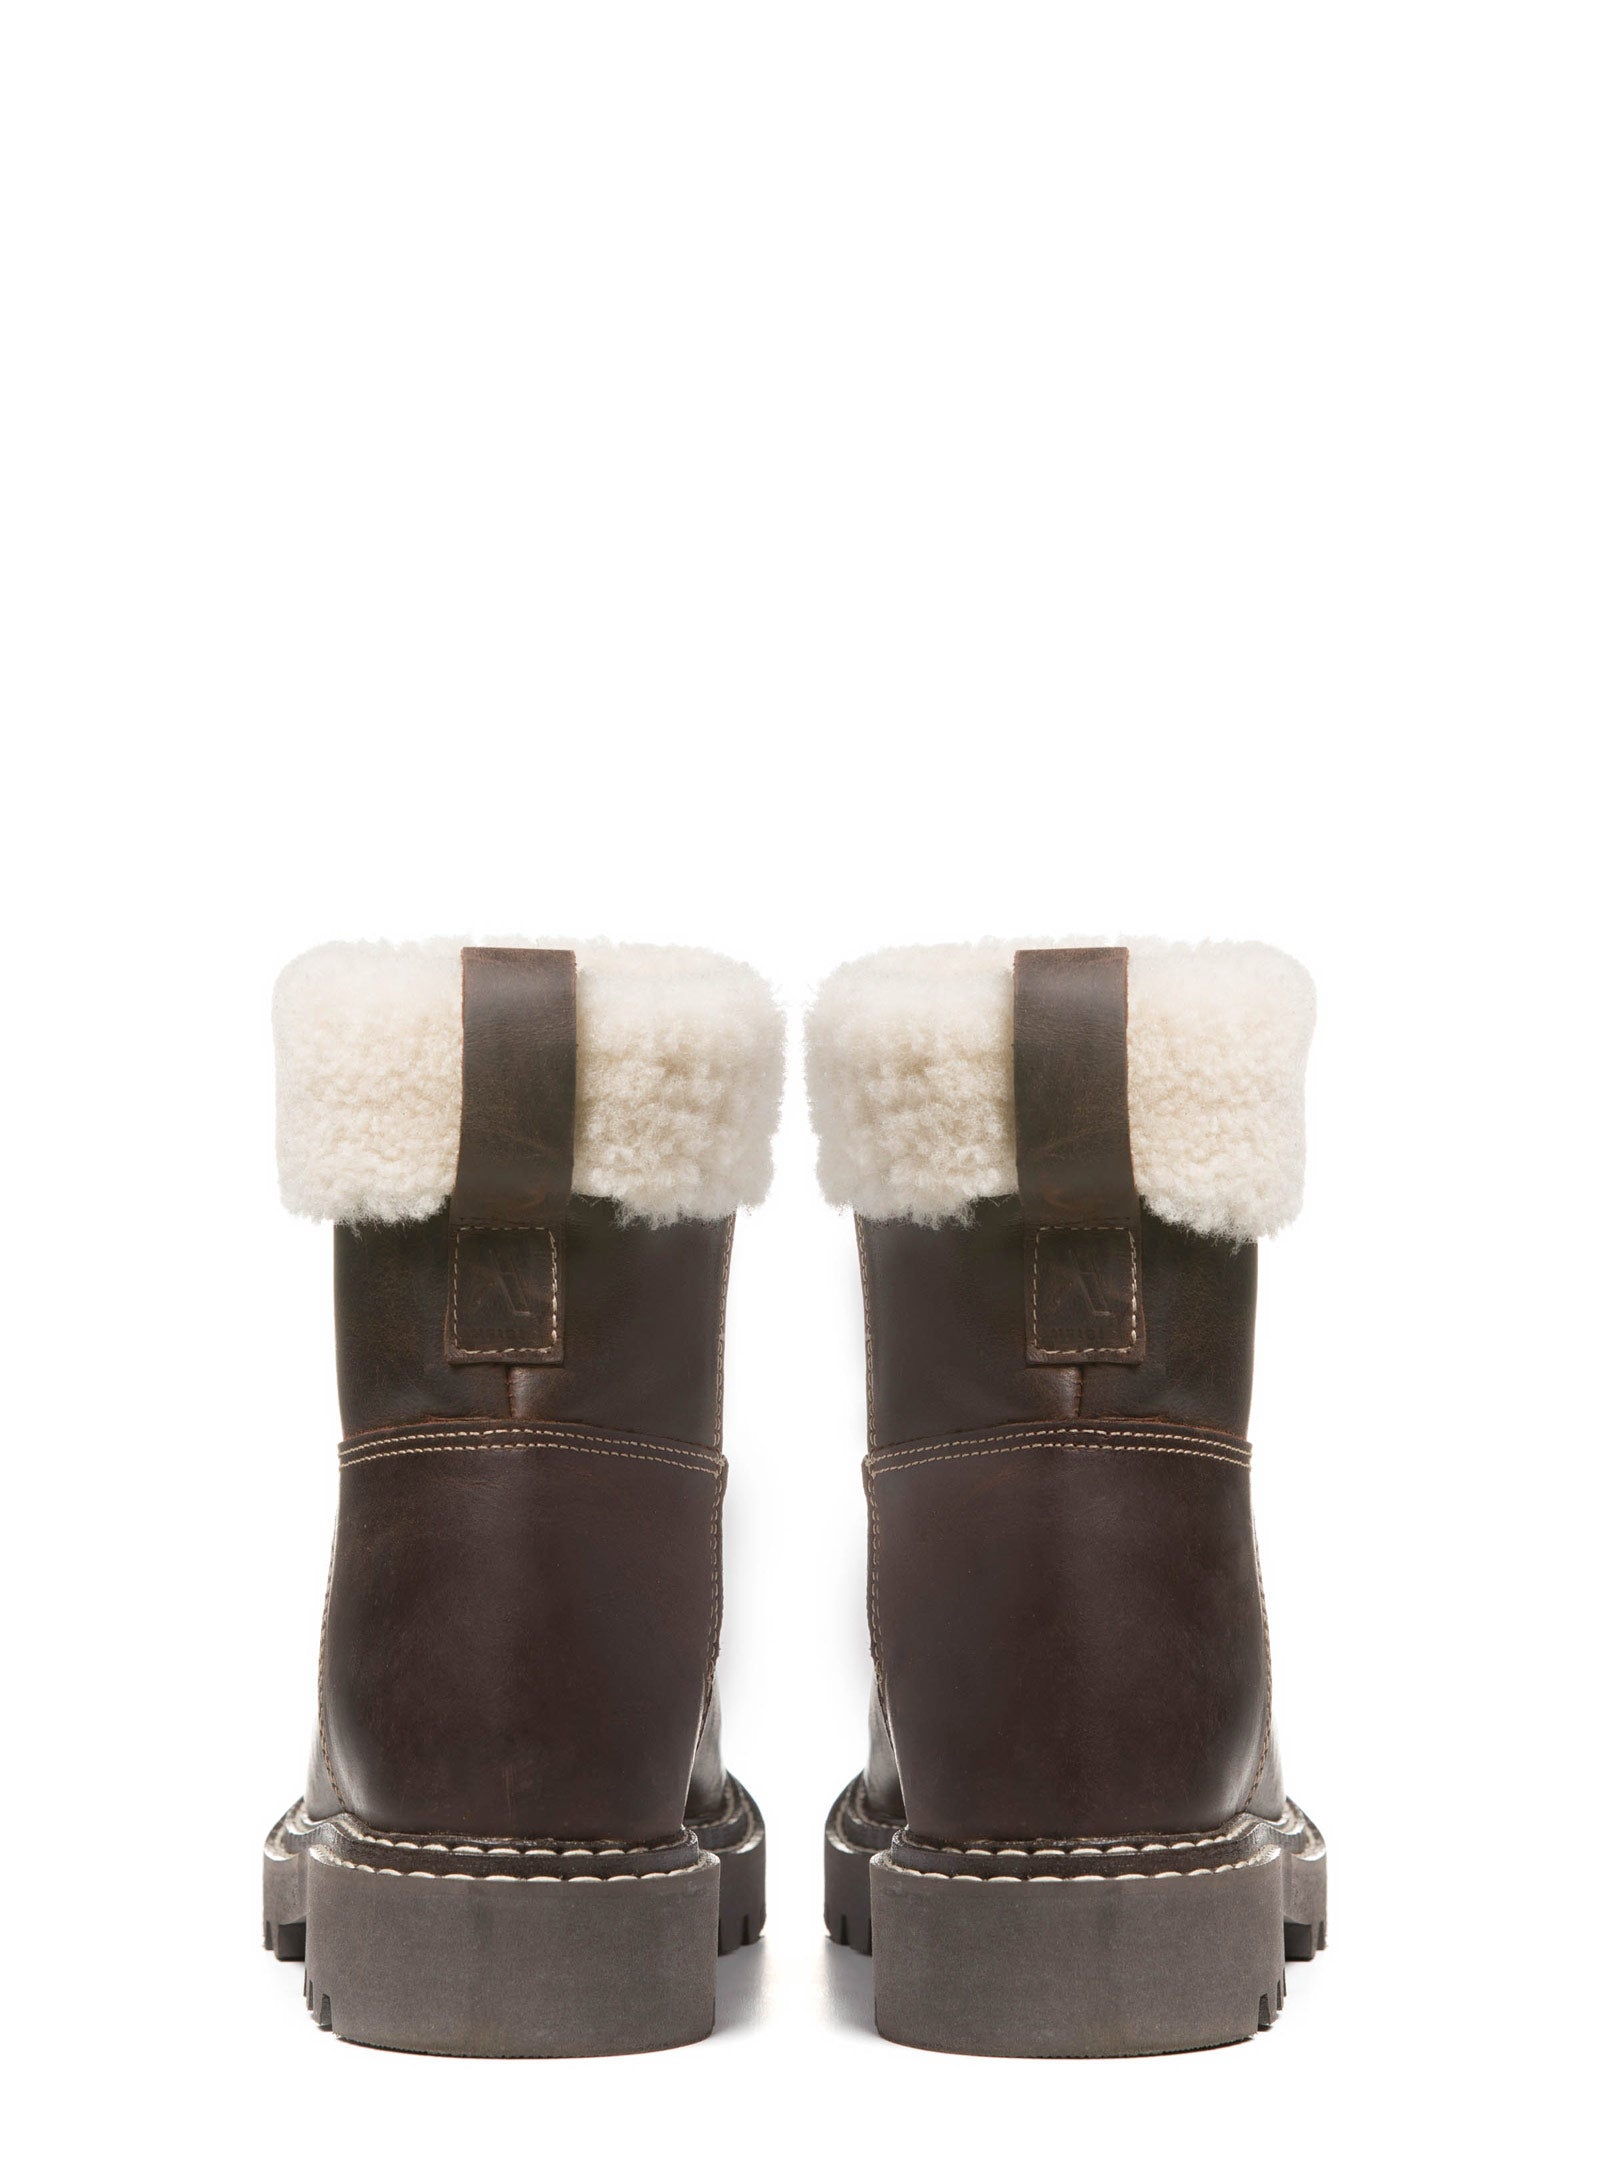 SUREN | Women's Waterproof Leather Winter Boots | Made in Canada ...